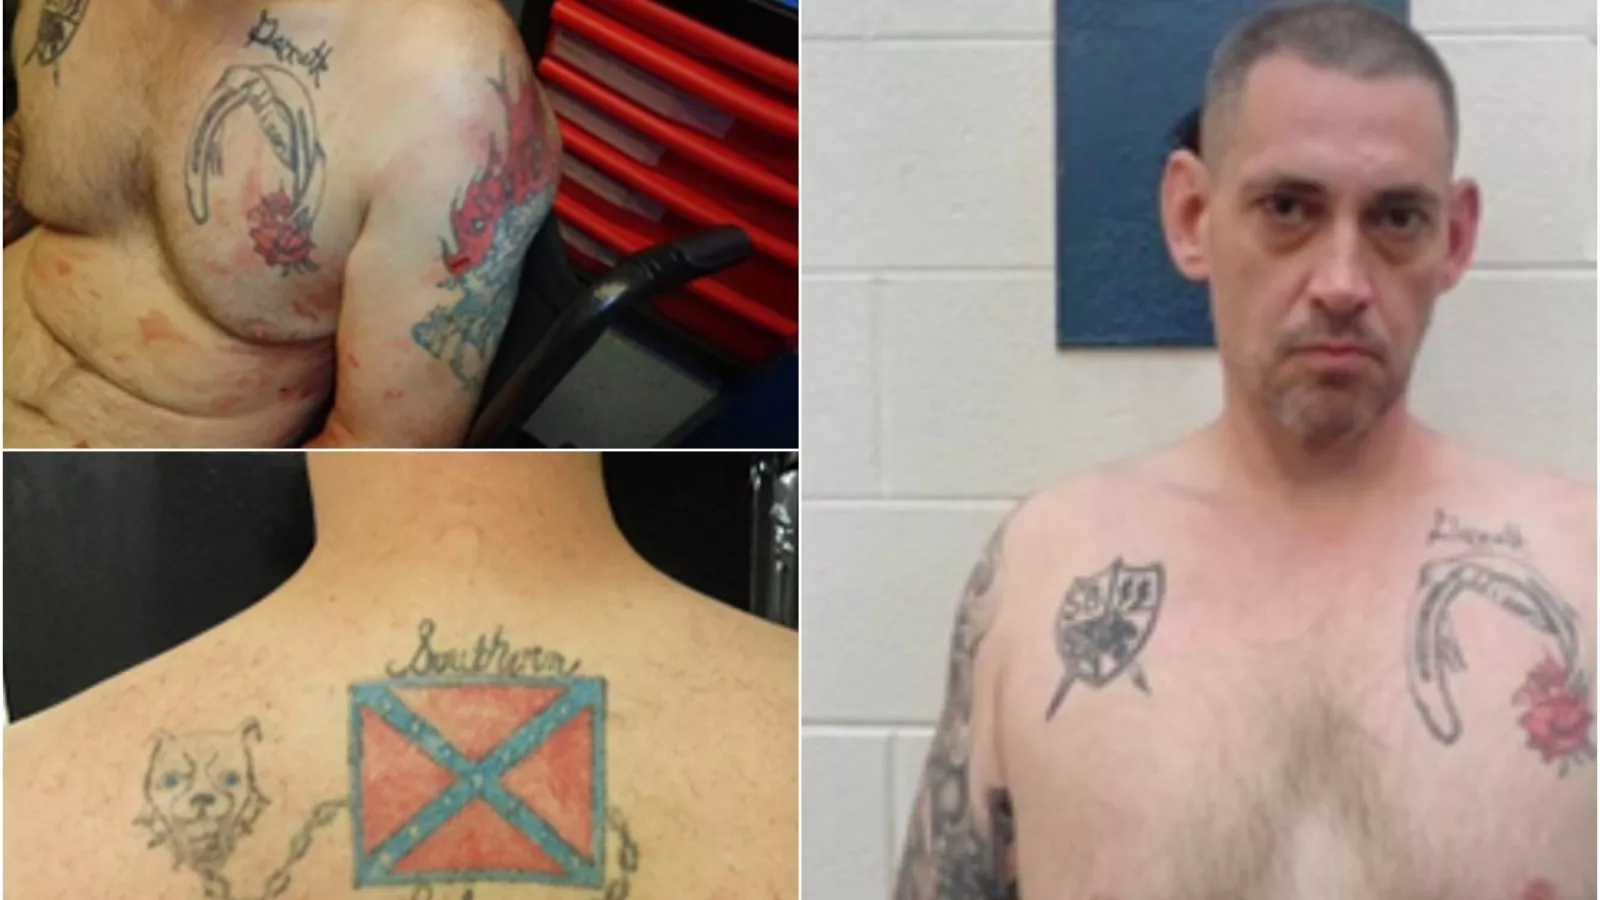 Casey White Tattoo Photos Show Nazi SS Symbol, Confederate Flag